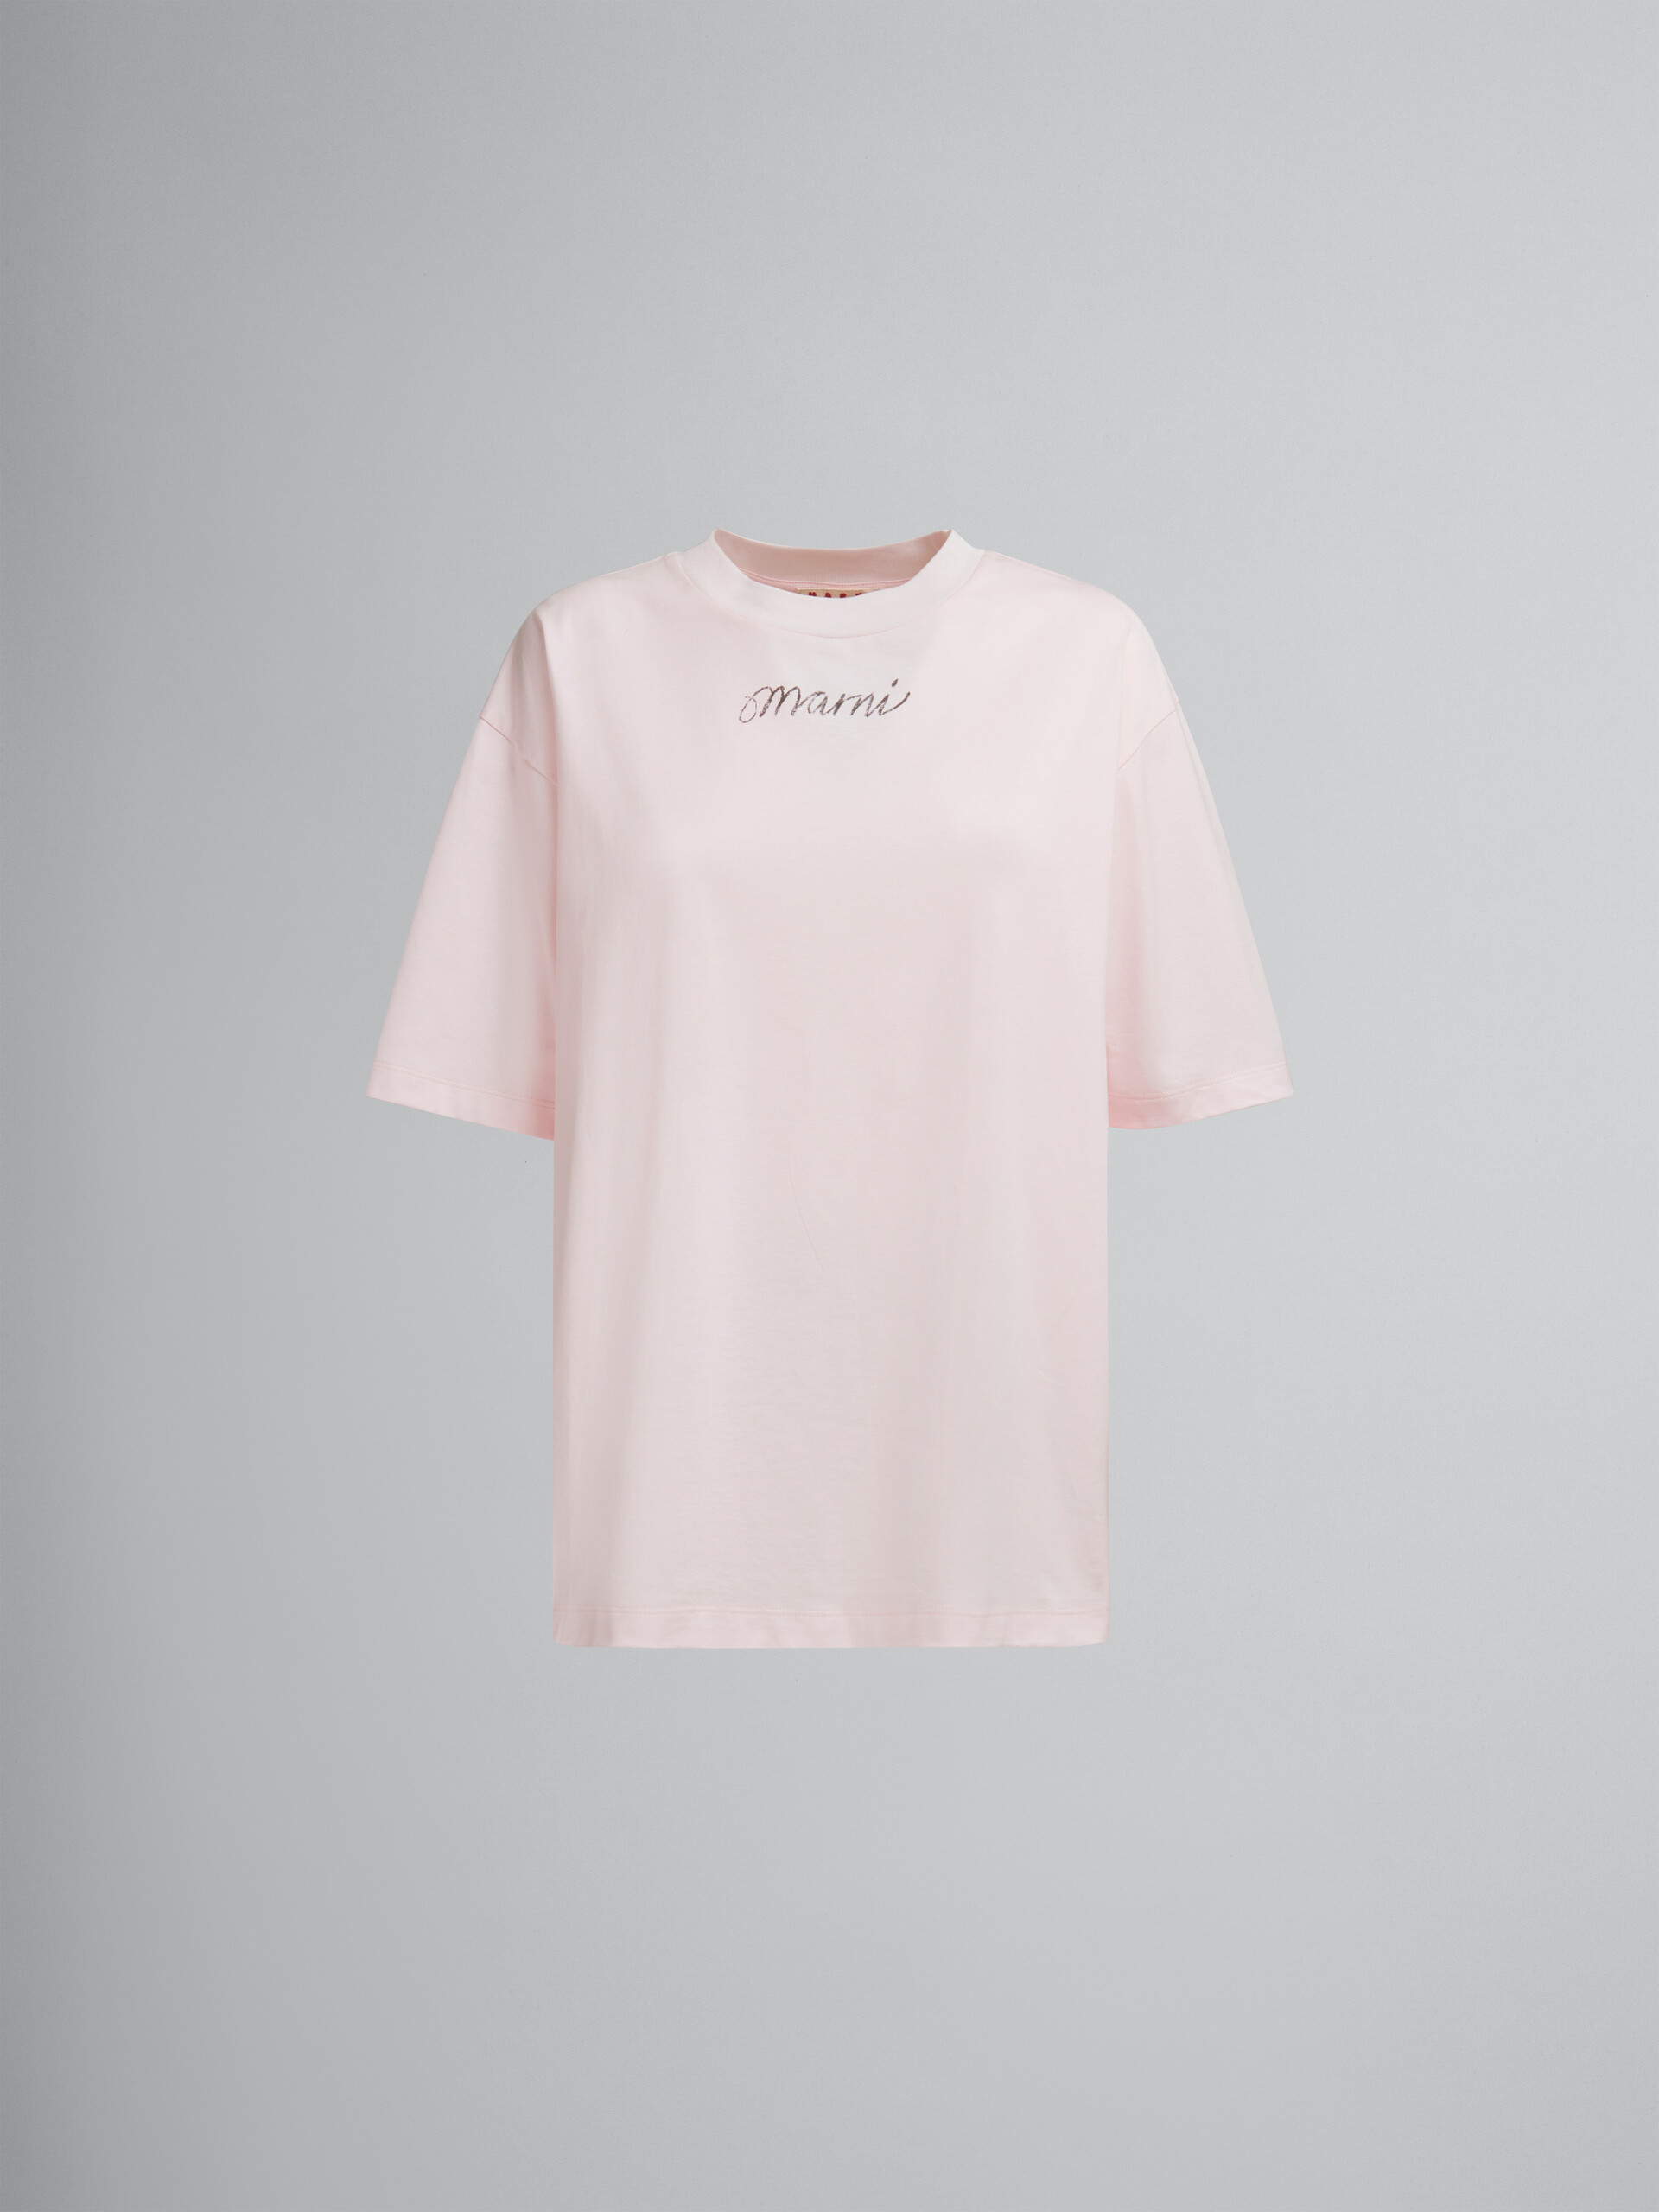 Camiseta de corte cuadrado rosa de algodón orgánico con logotipo repetido - Camisetas - Image 1